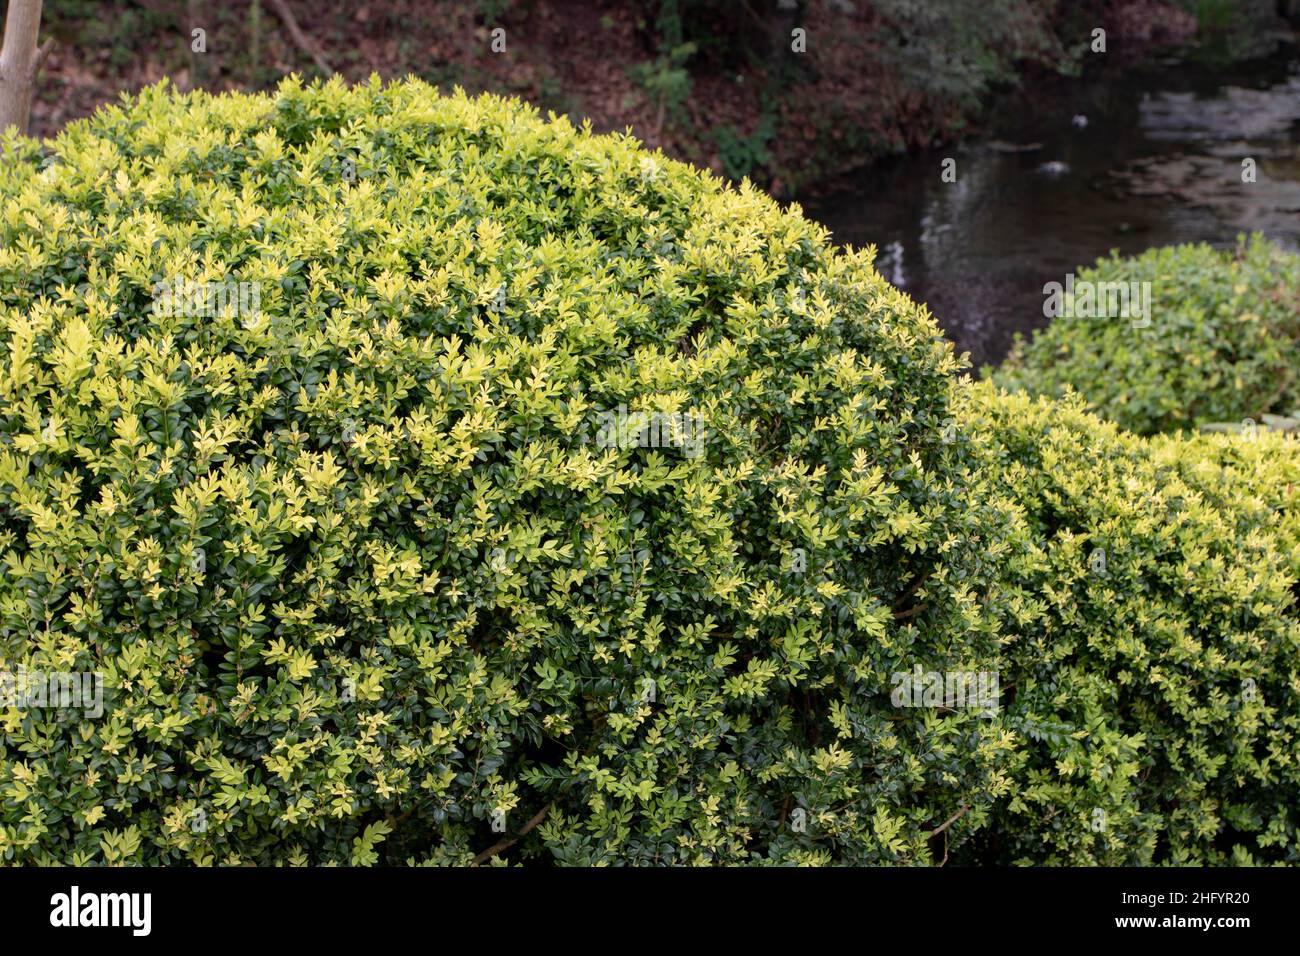 Scatola comune, scatola europea, o arbusto sempreverde di bosso potato nel giardino. Buxus sempervirens topiary. Cultivar variegato. Foto Stock